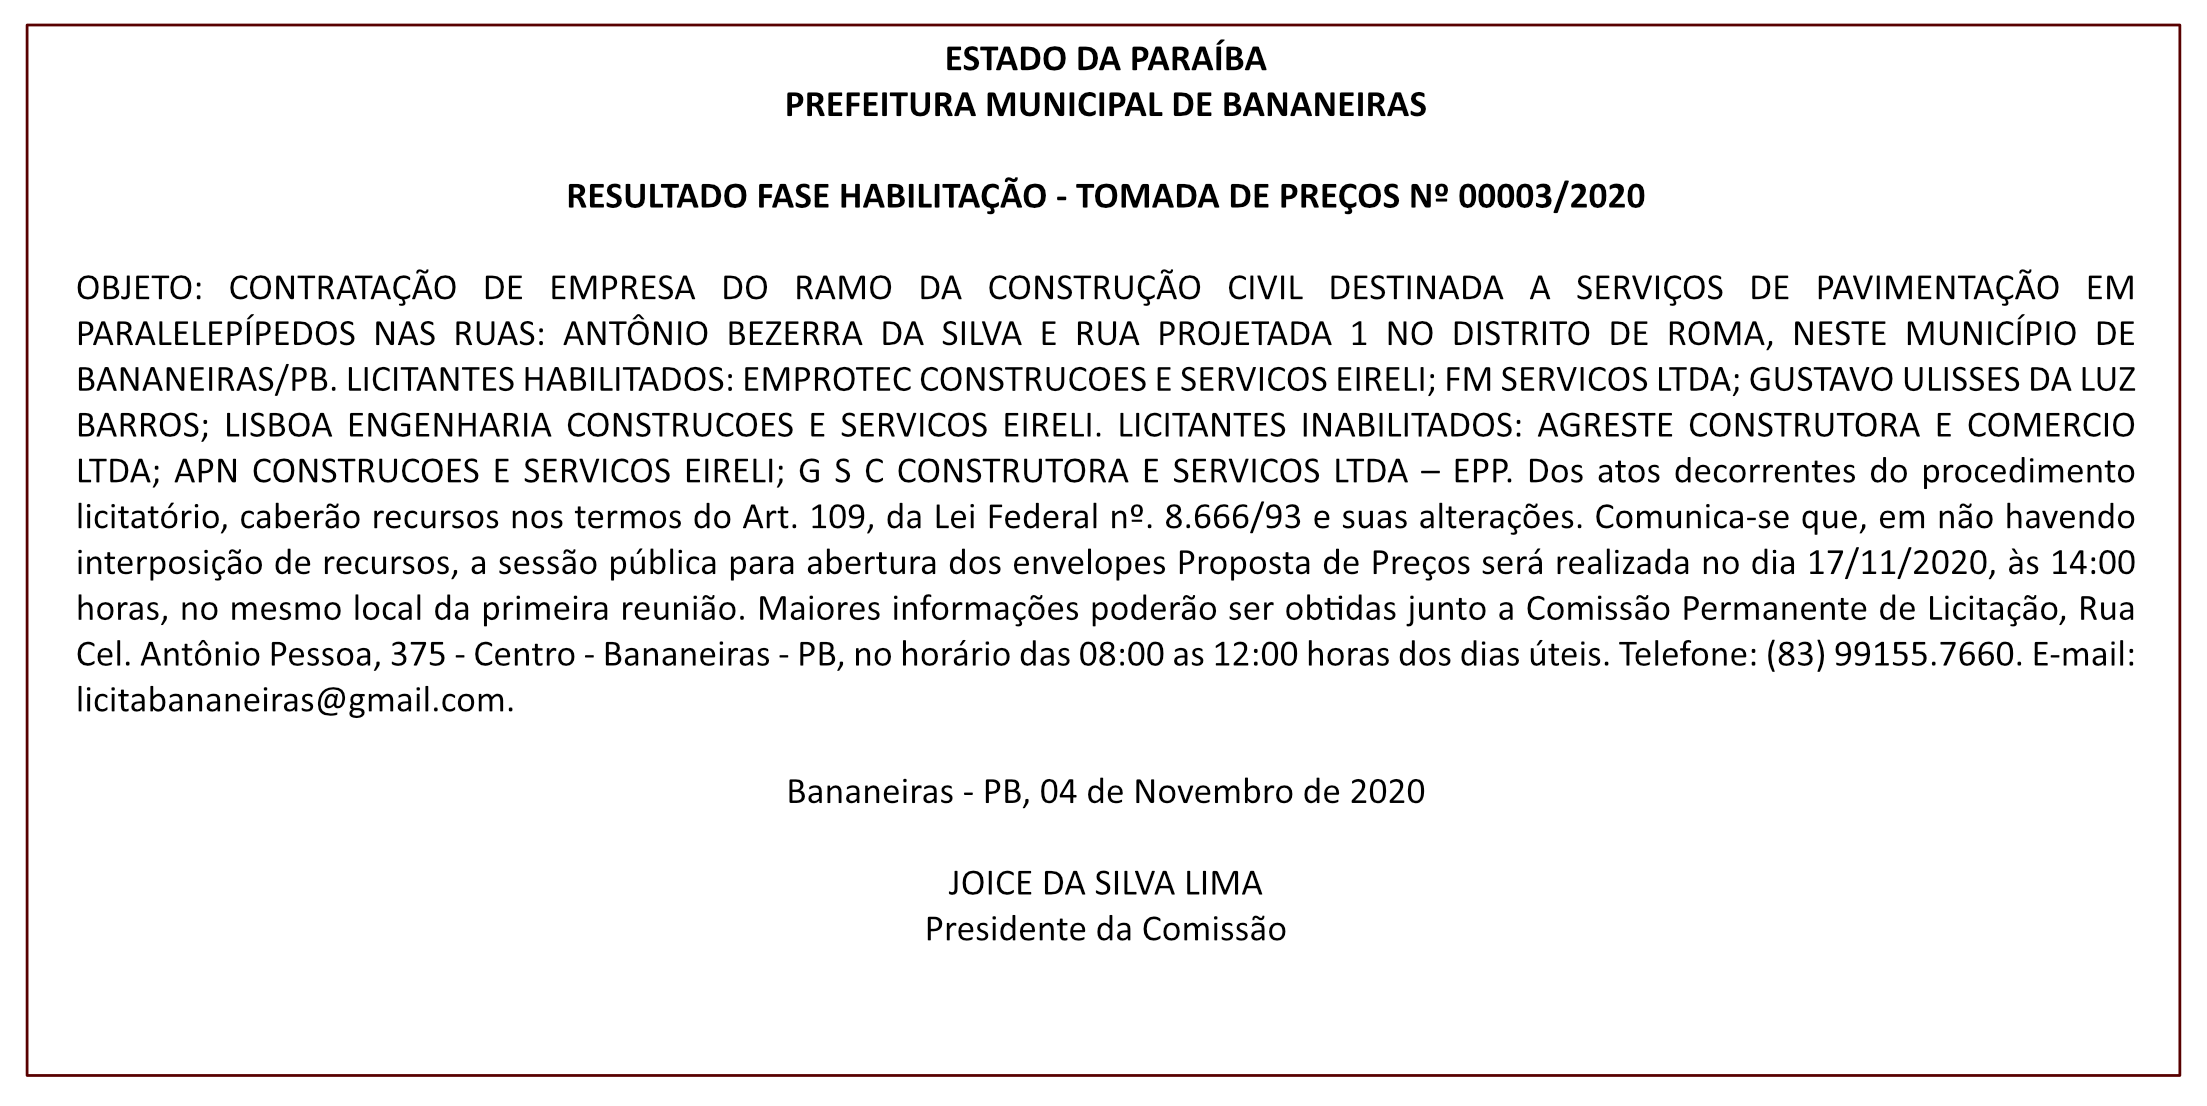 PREFEITURA MUNICIPAL DE BANANEIRAS – RESULTADO FASE HABILITAÇÃO – TOMADA DE PREÇOS Nº 00003/2020